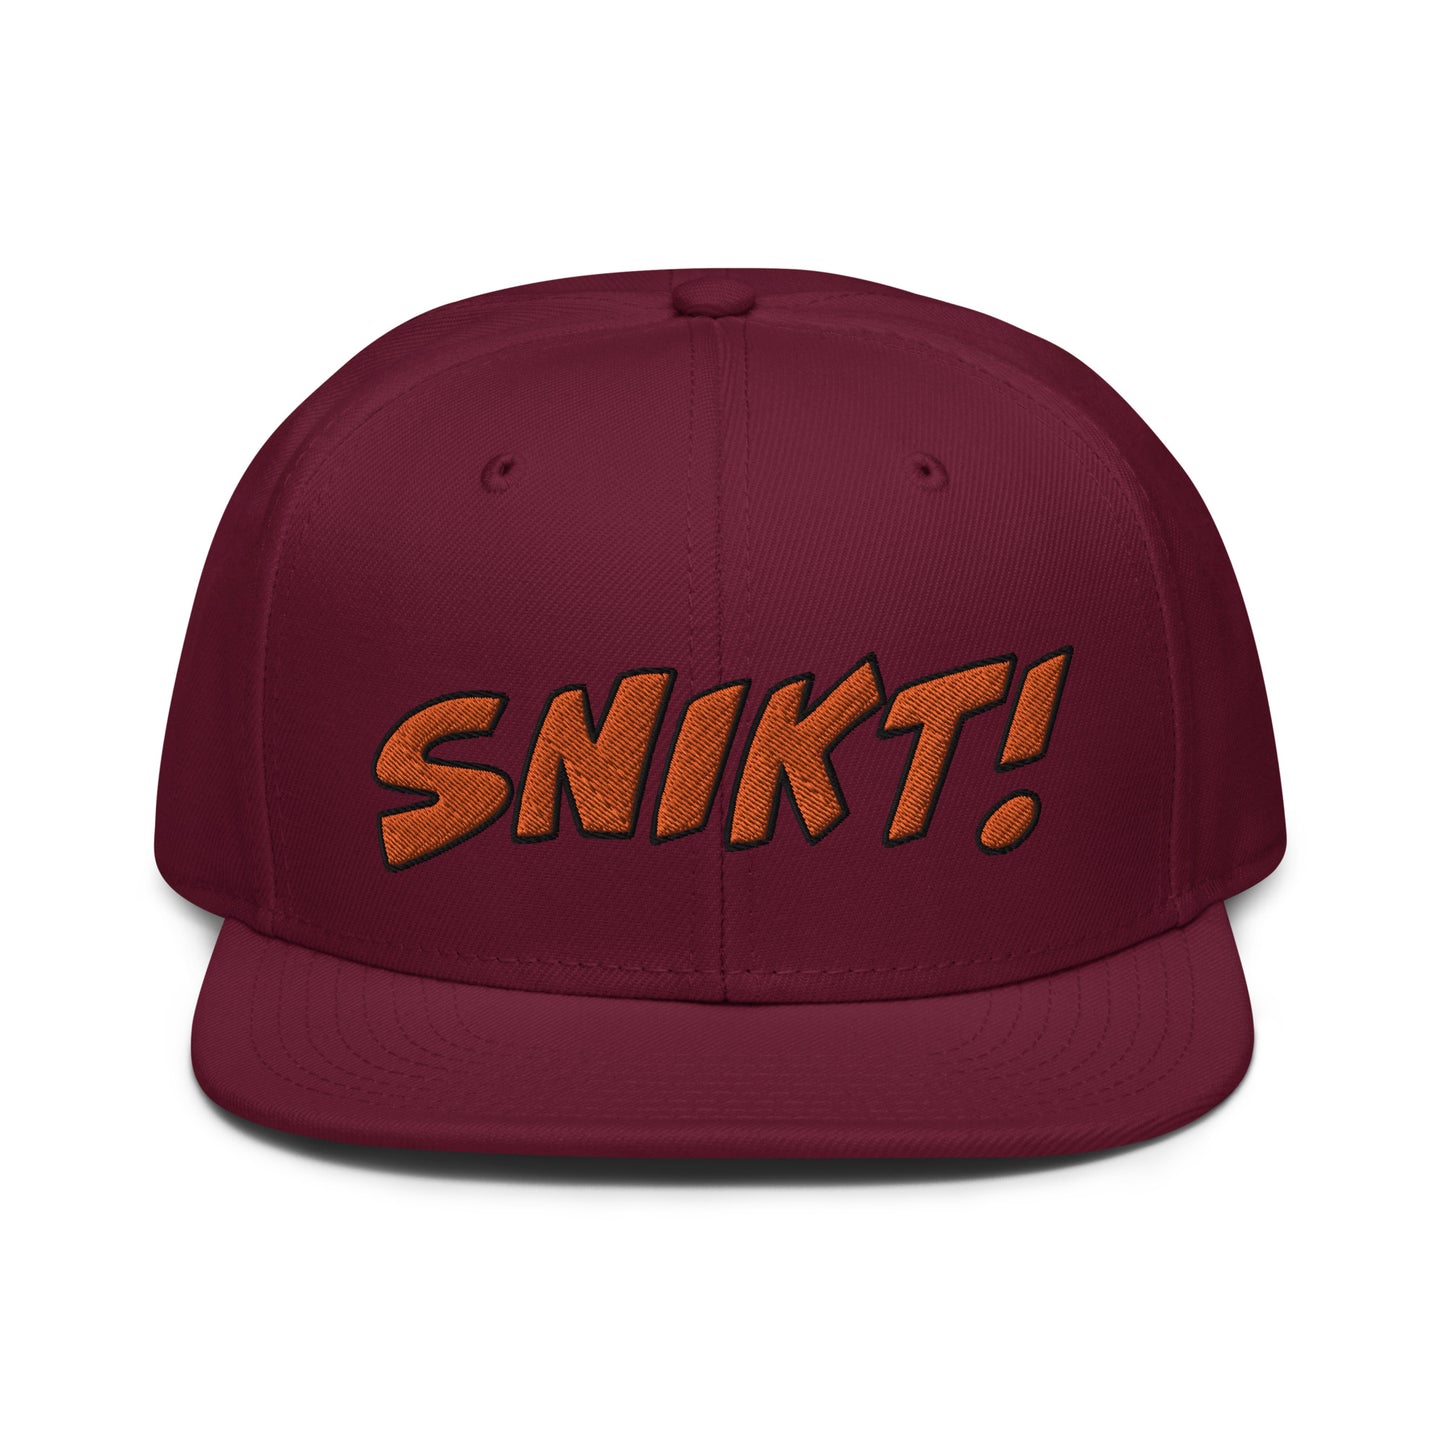 SNIKT! snapback hat